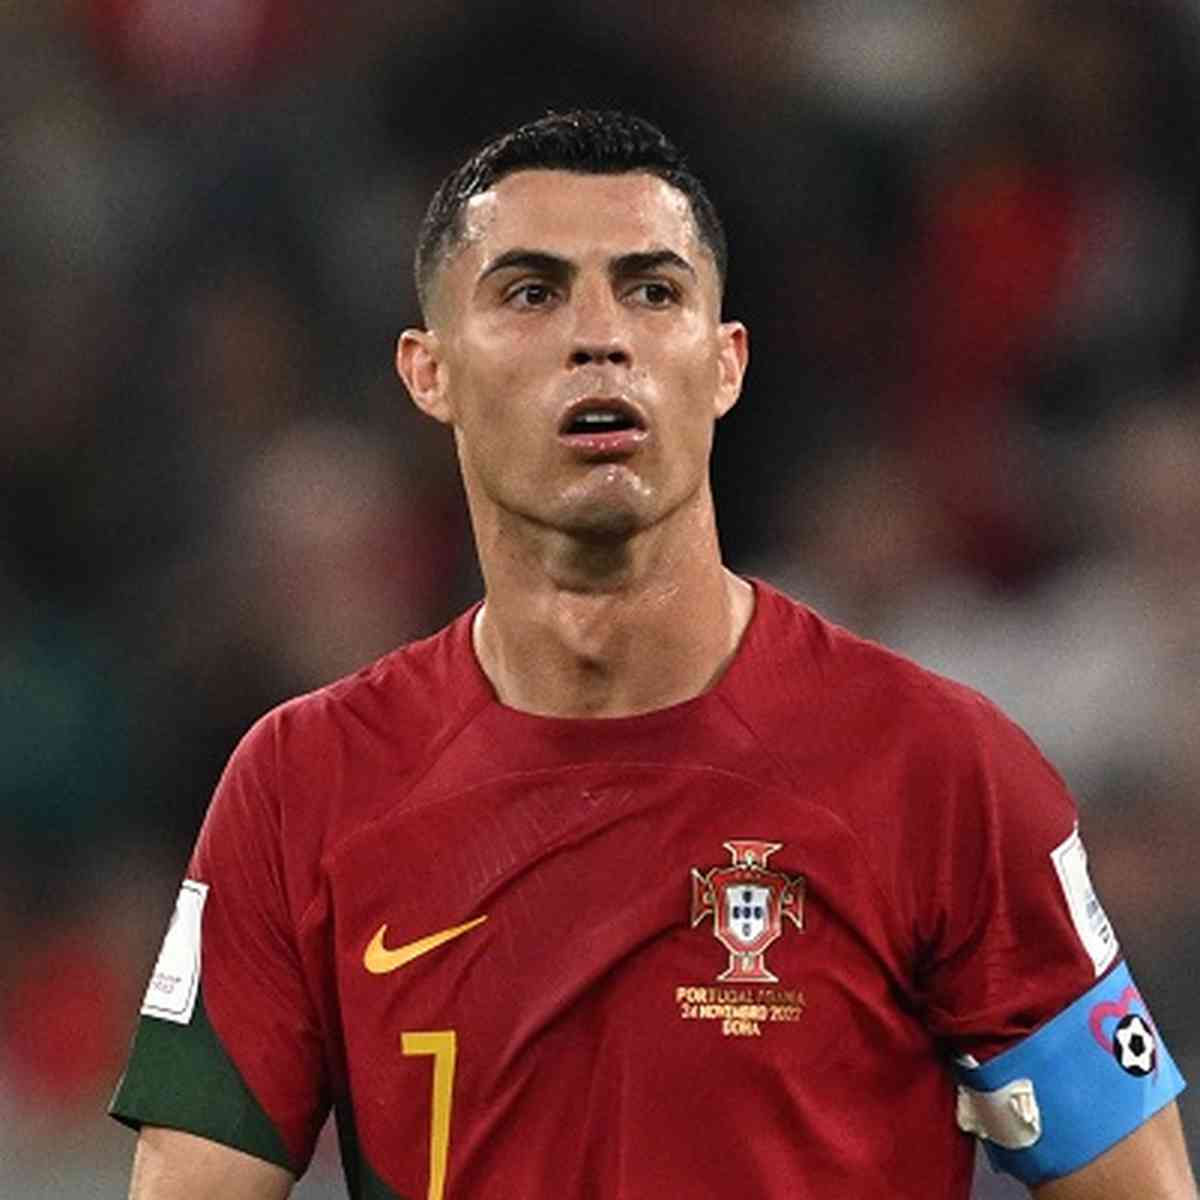 Portugal joga na região